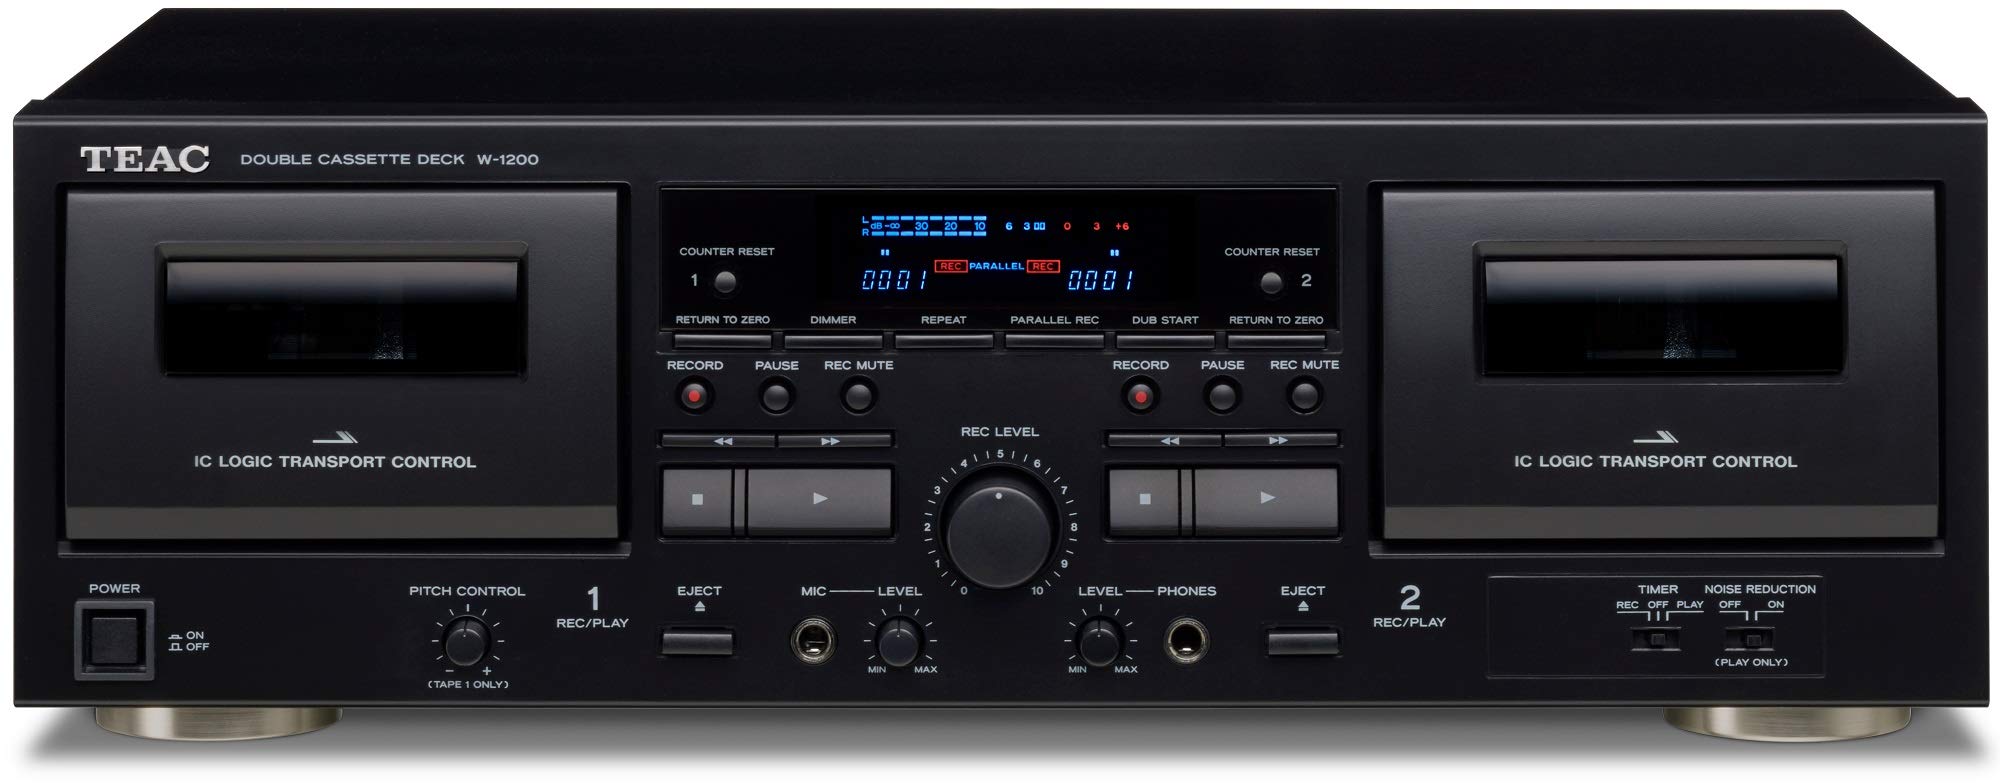 Teac Двойная кассетная дека W-1200 с рекордером / USB / Pitch / караоке-микрофоном и пультом дистанционного управления